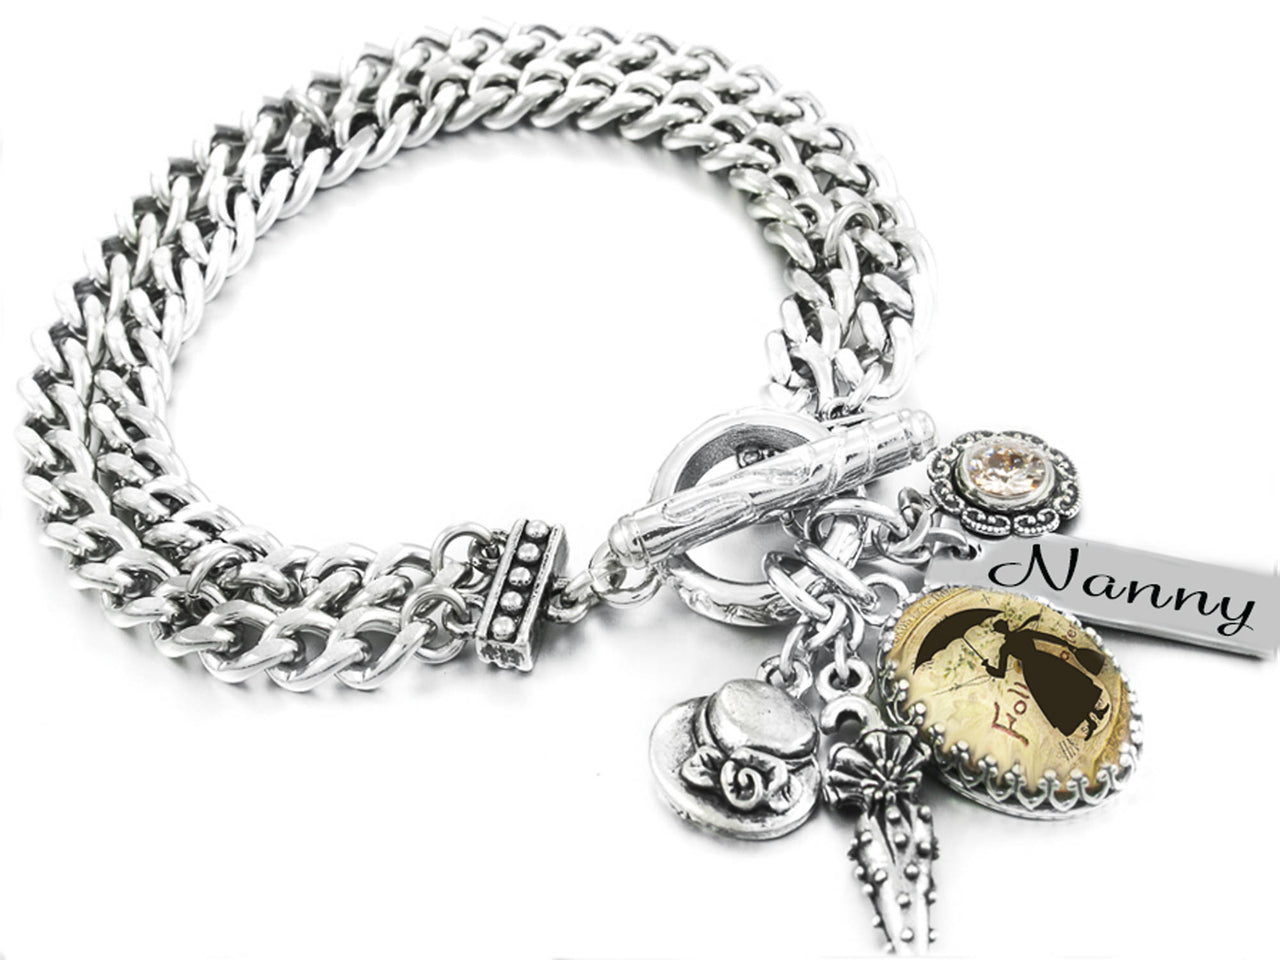 Mary Poppins Charm Bracelet, Nanny Jewelry